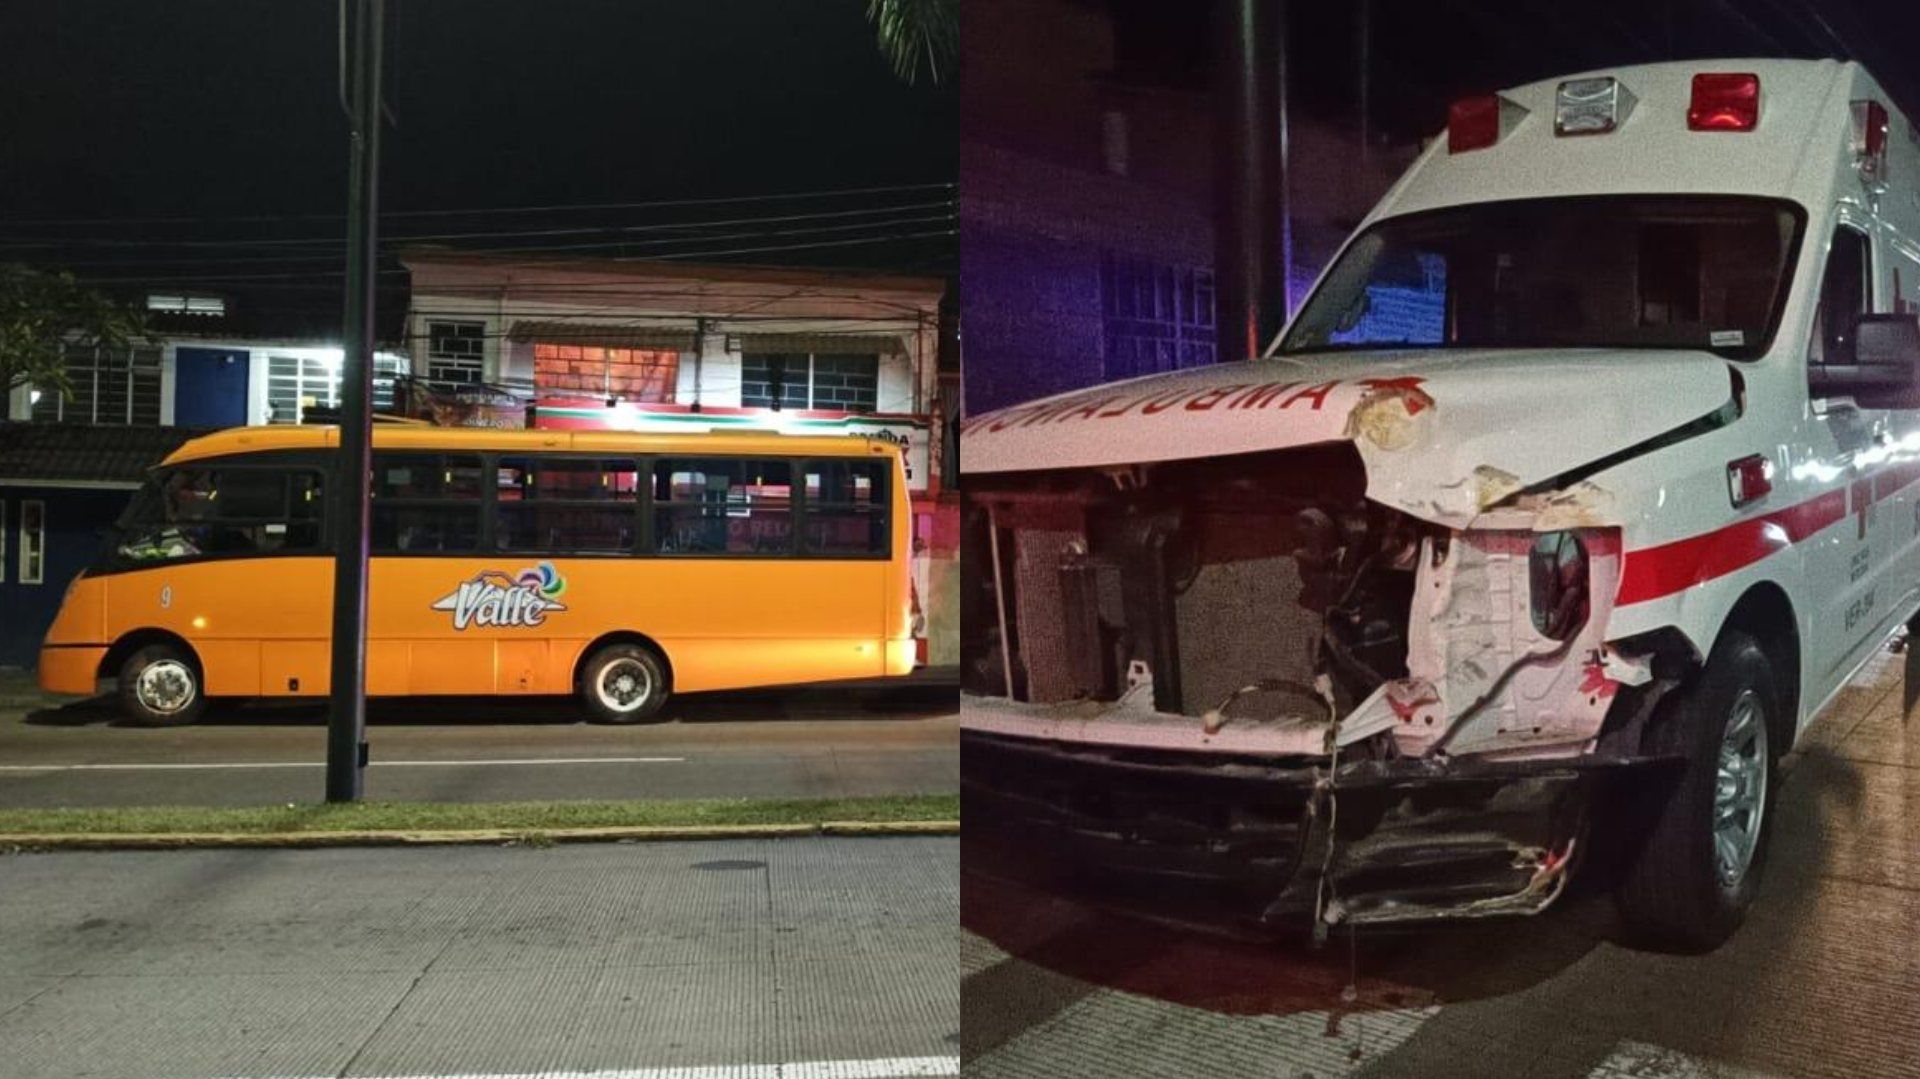 Según testigos el autobús no hizo alto y no dio la preferencia a la ambulancia, la cual circulaba con torreta y luces encendidas.